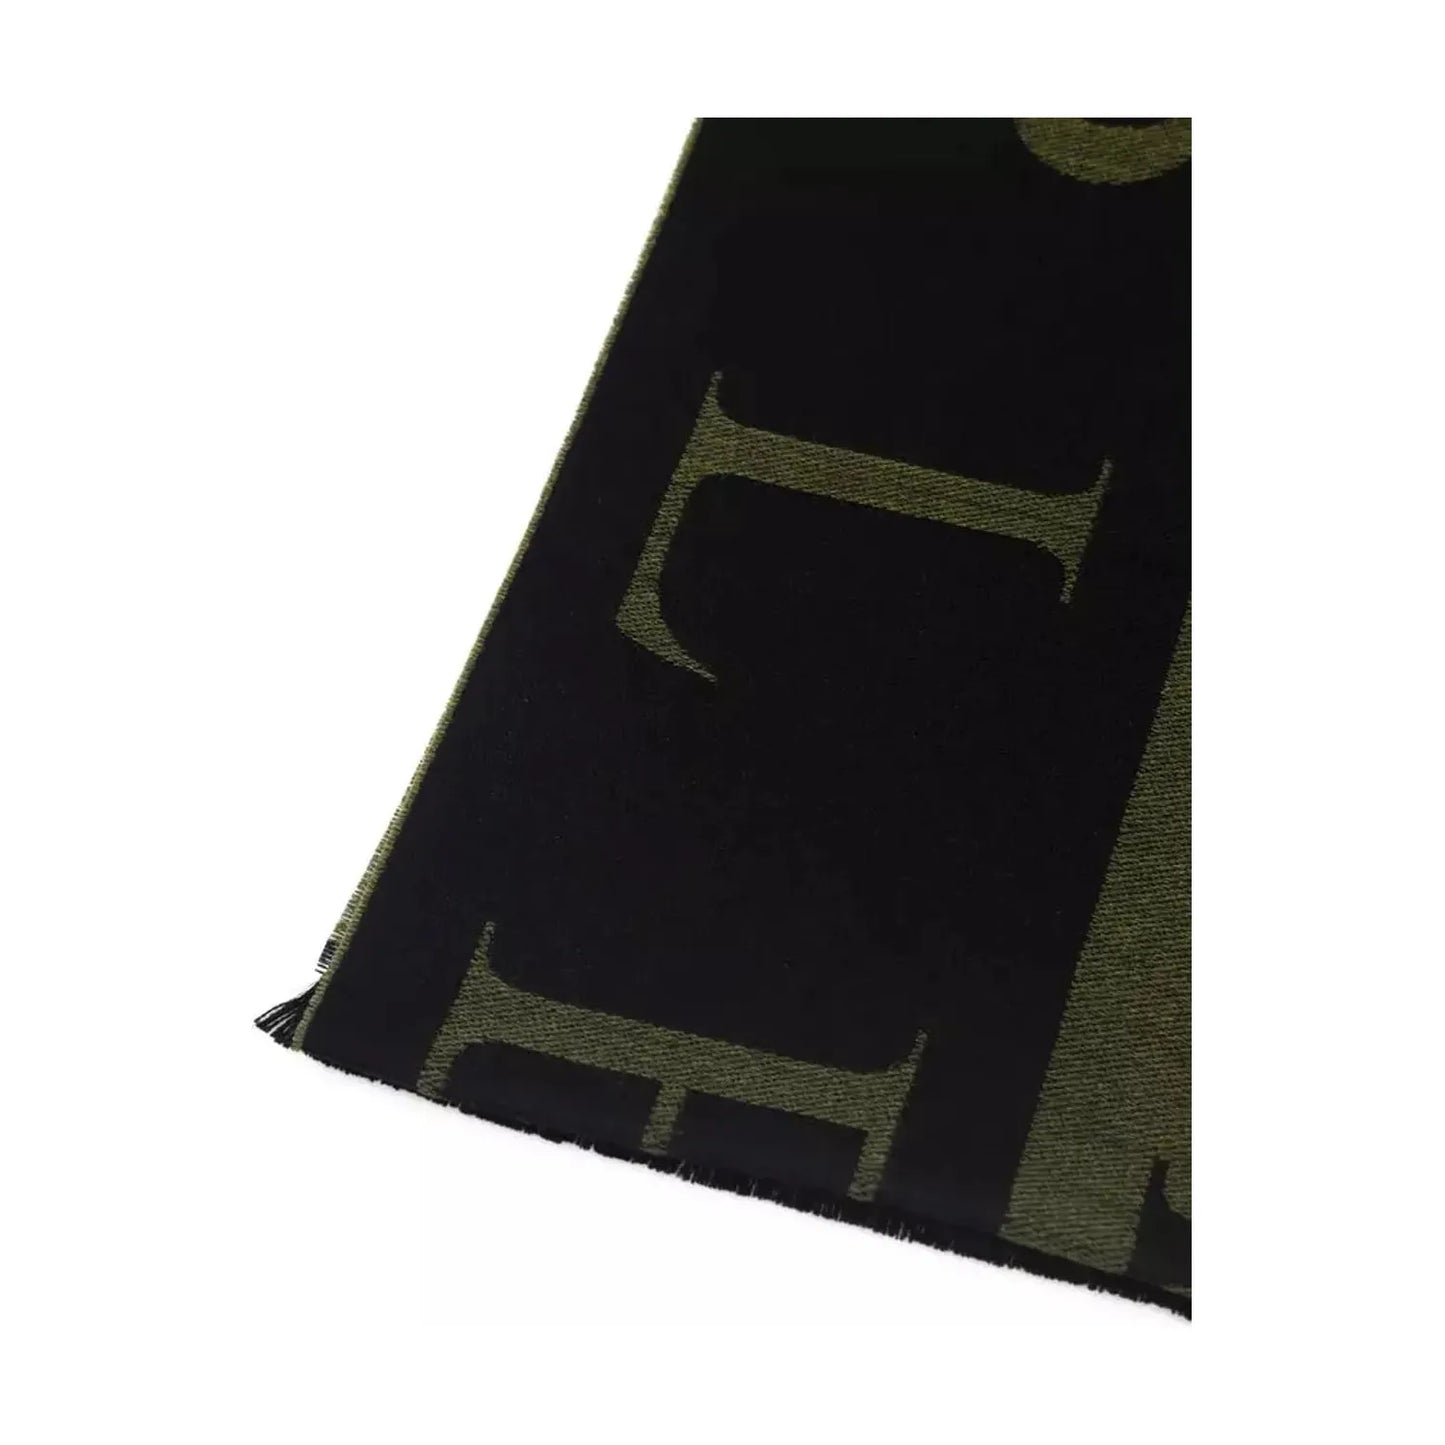 Philipp Plein Elegant Green Fringed Scarf green-wool-scarf Wool Wrap Shawl Scarf product-22235-1502737302-25-ce5ef0d1-f78.webp